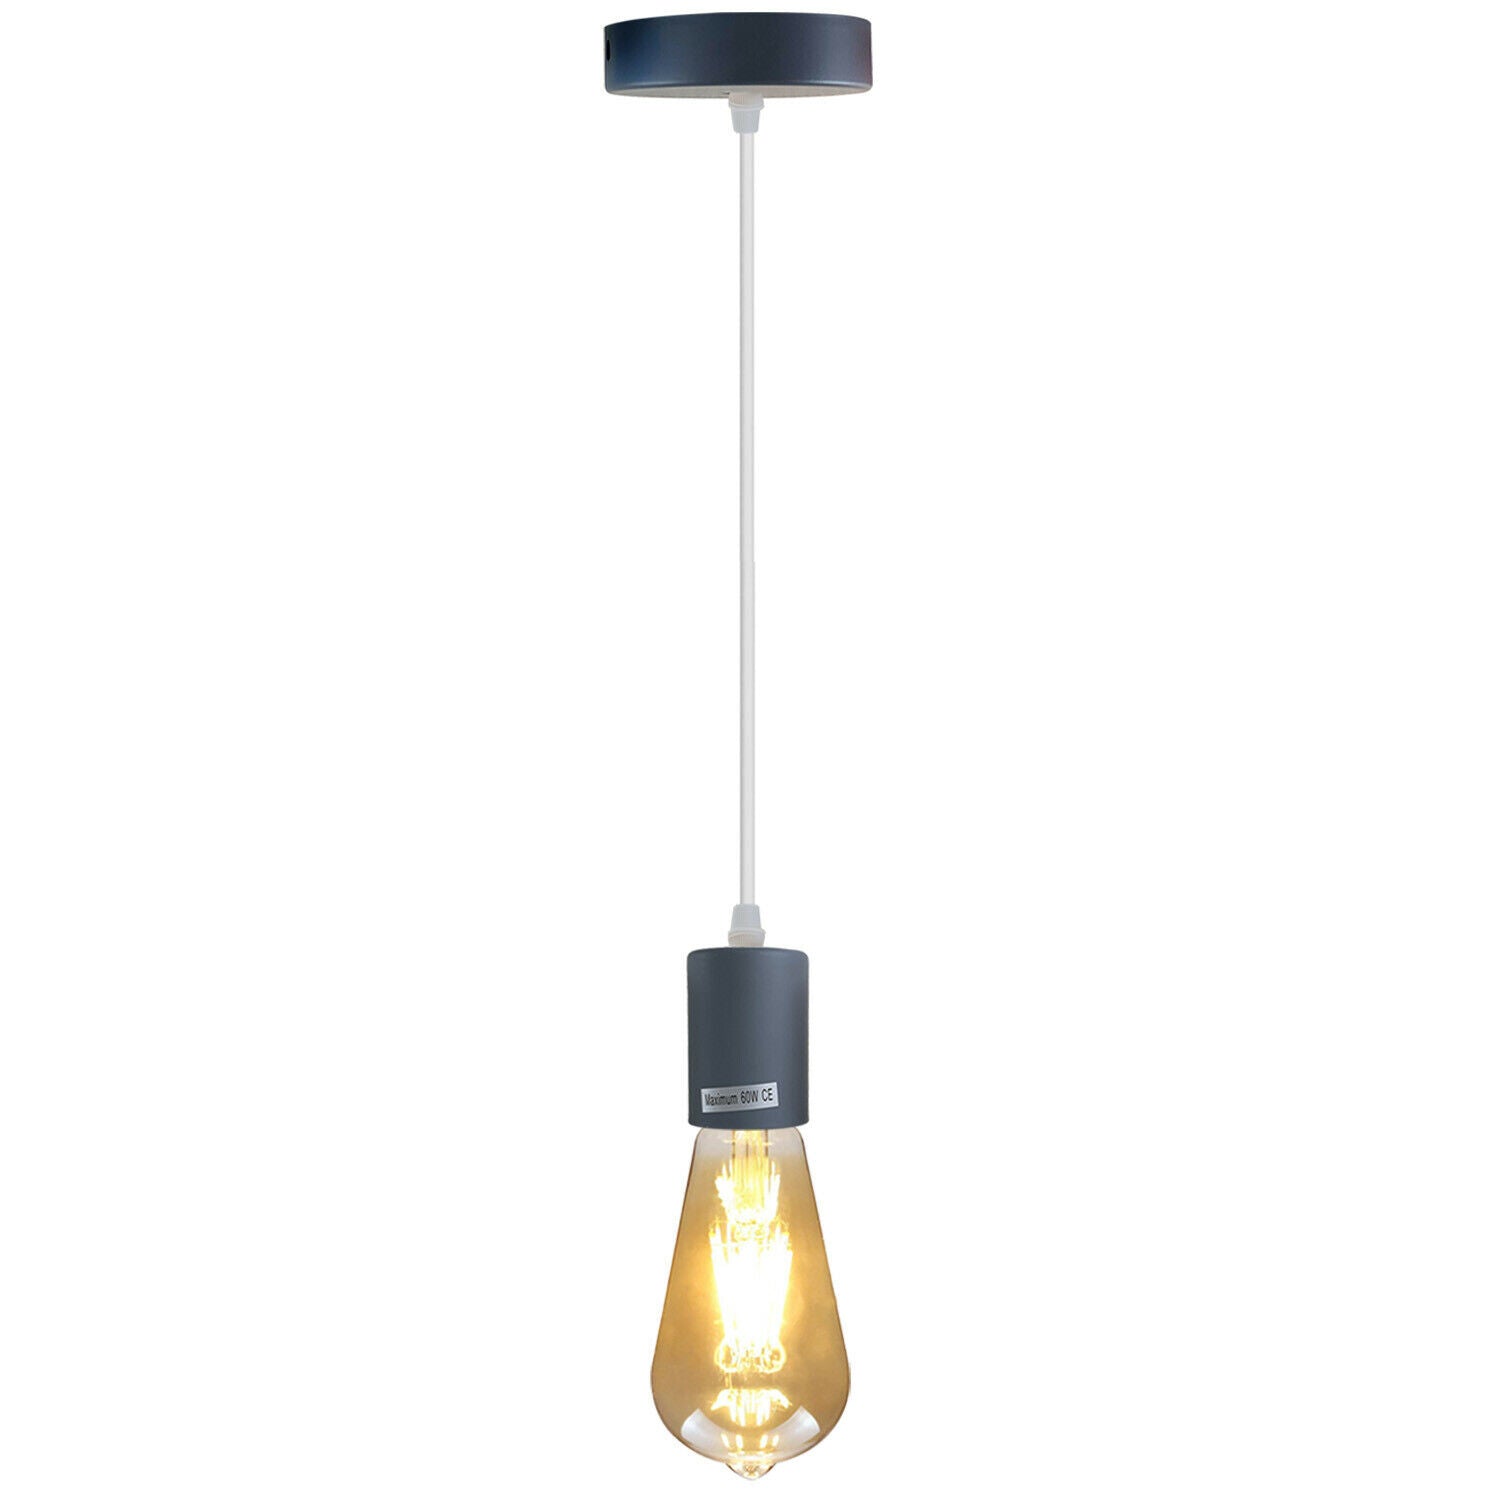 Grey E27 Ceiling Light Fitting Industrial Pendant Lamp Bulb Holder~1674 - LEDSone UK Ltd